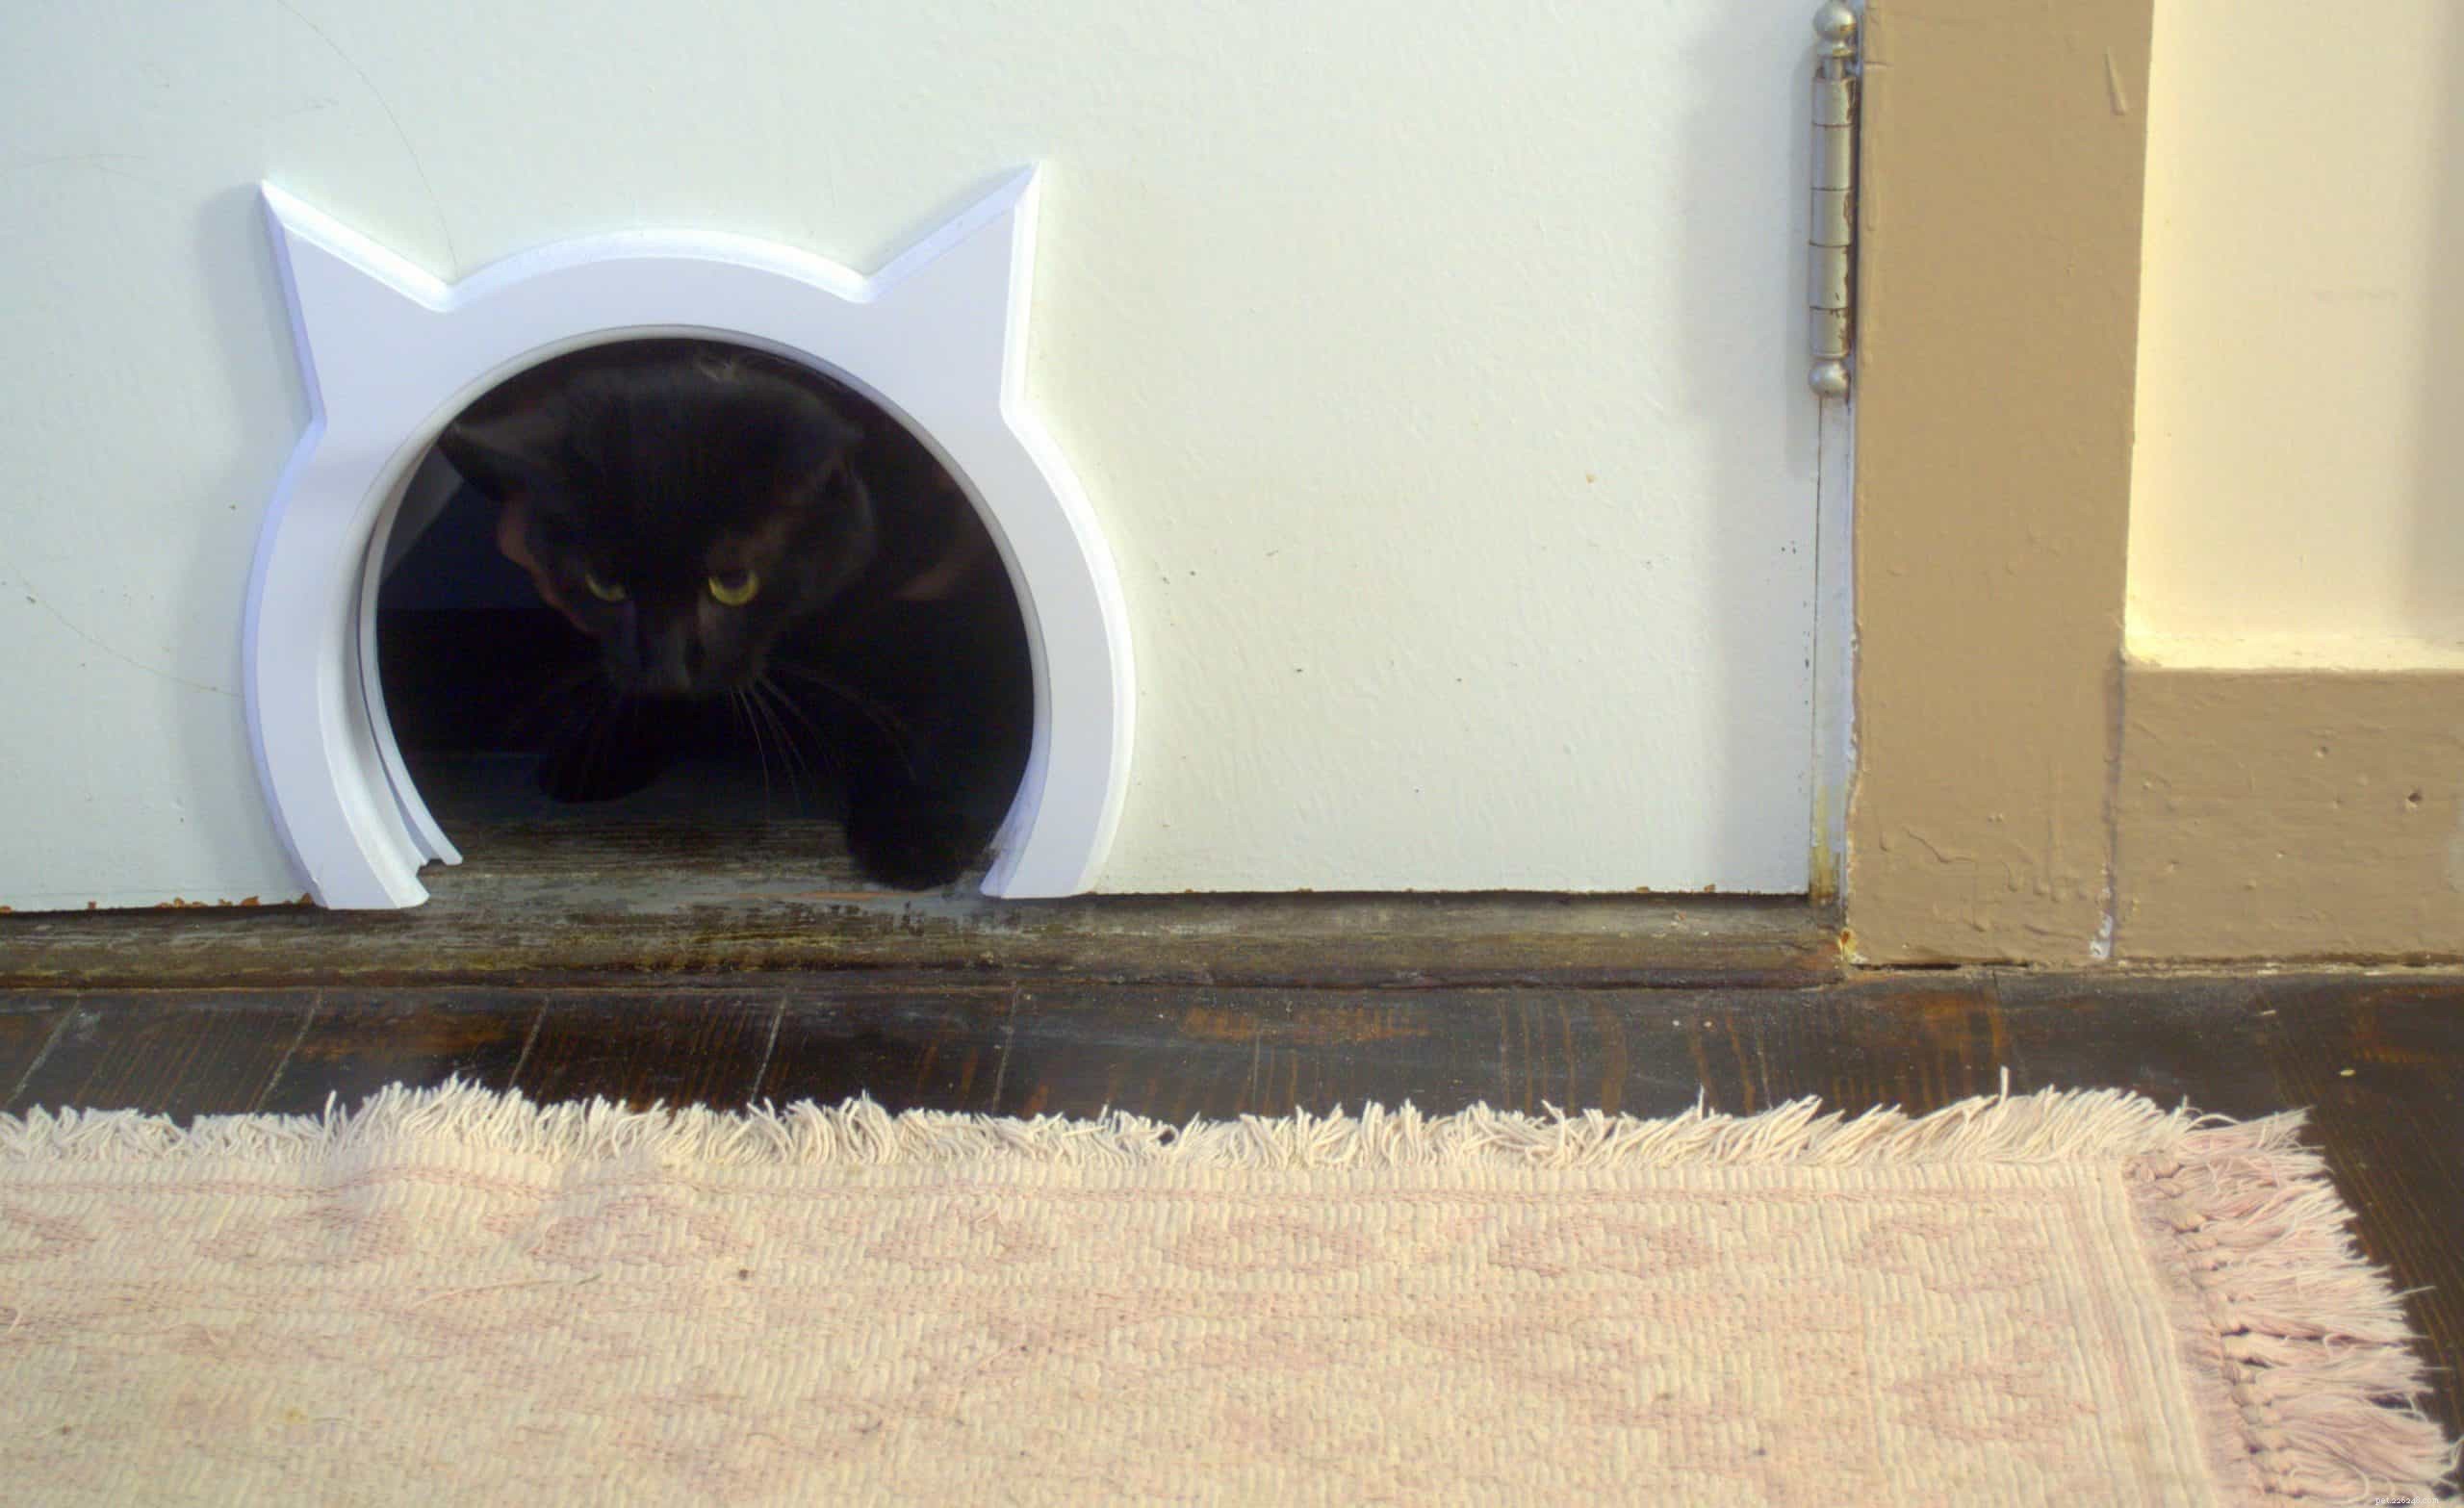 Почему кошки ненавидят закрытые двери?